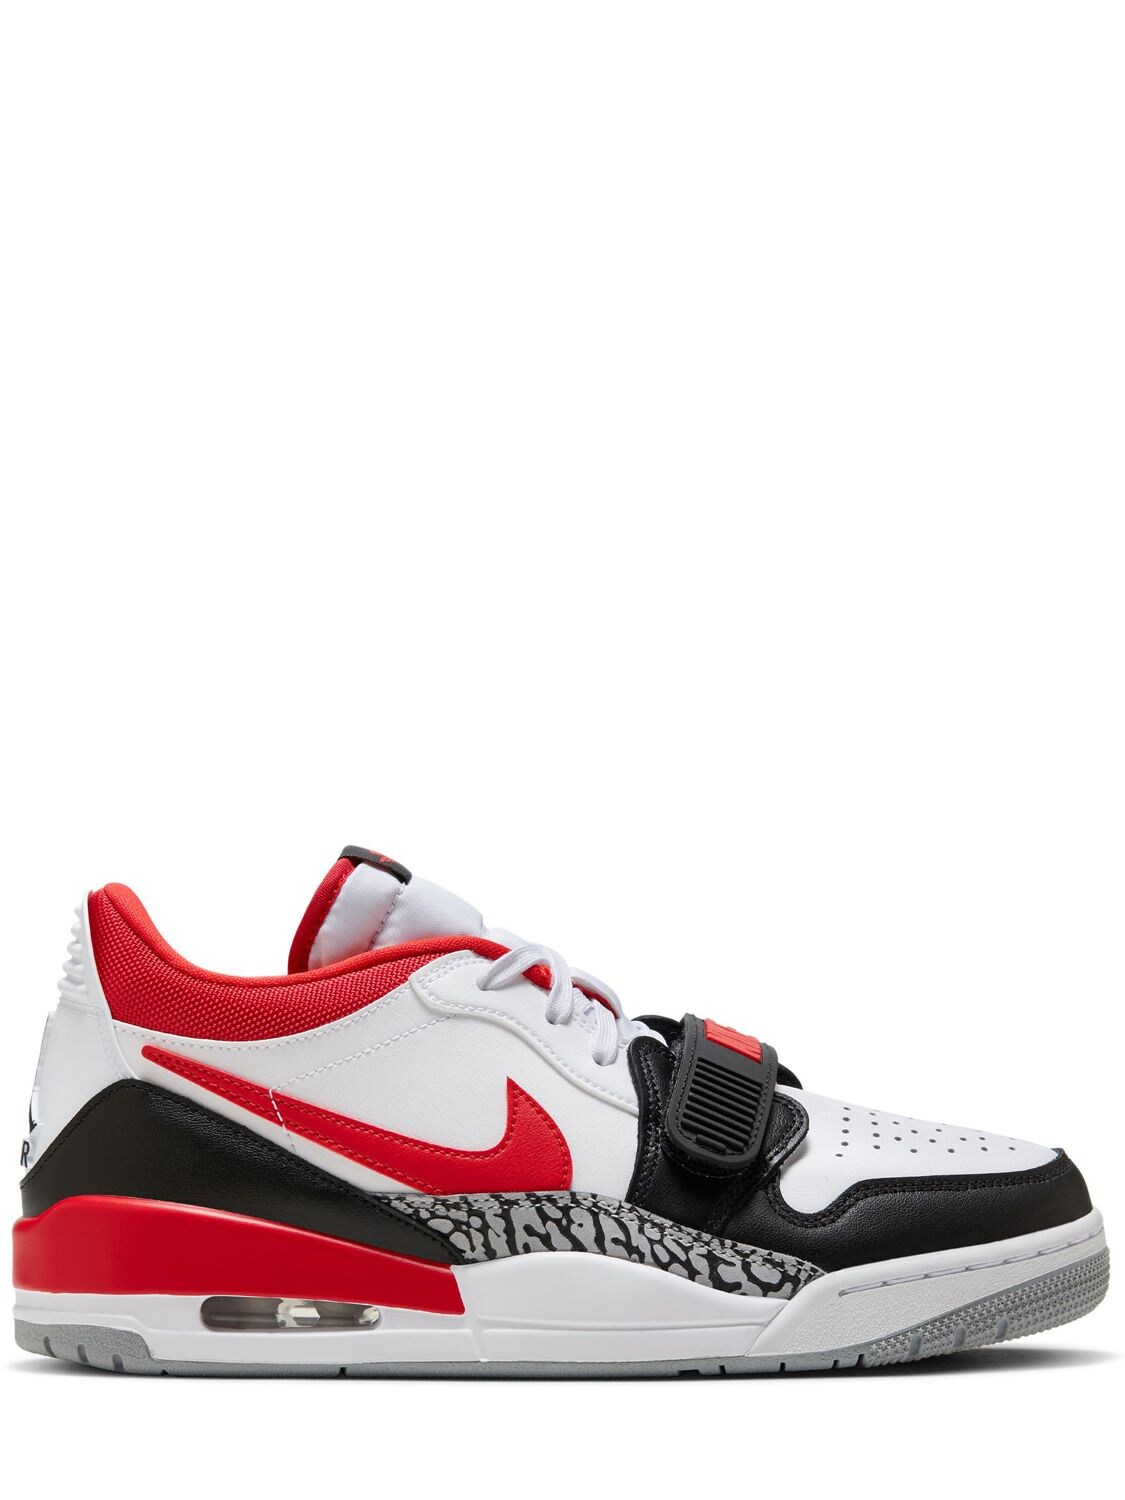 Air Jordan Legacy 312 Low Sneakers – MEN > SHOES > SNEAKERS